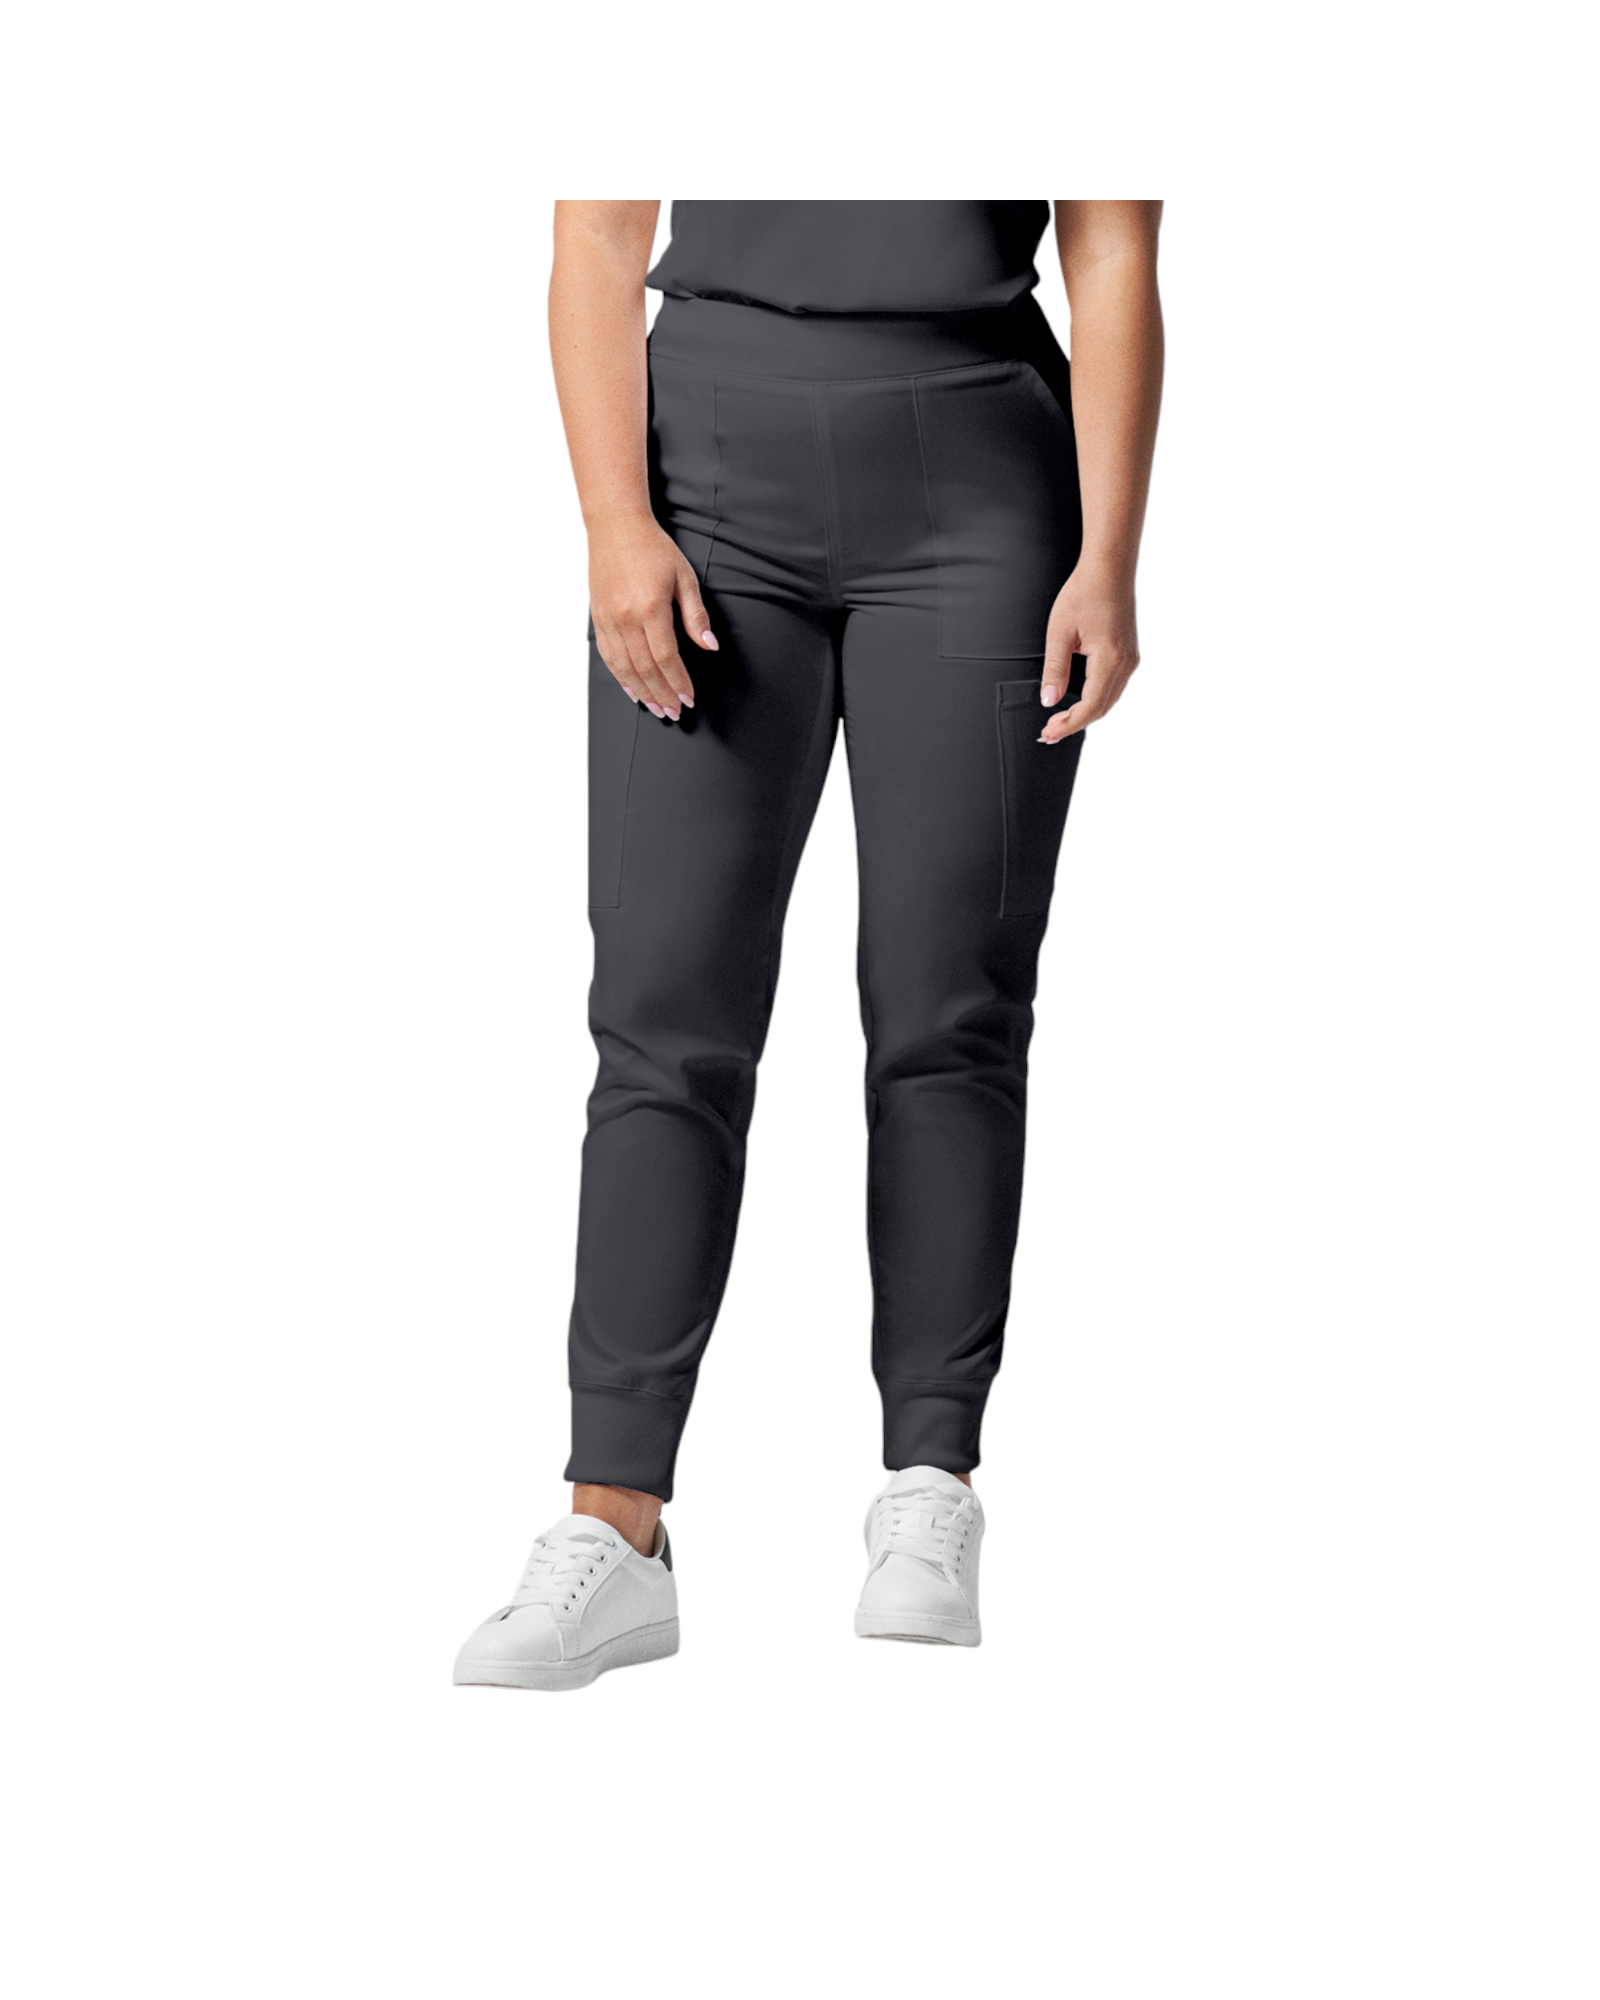 Pantalon de style jogger 6 poches pour femmes Landau Proflex #LB406 couleur Graphite